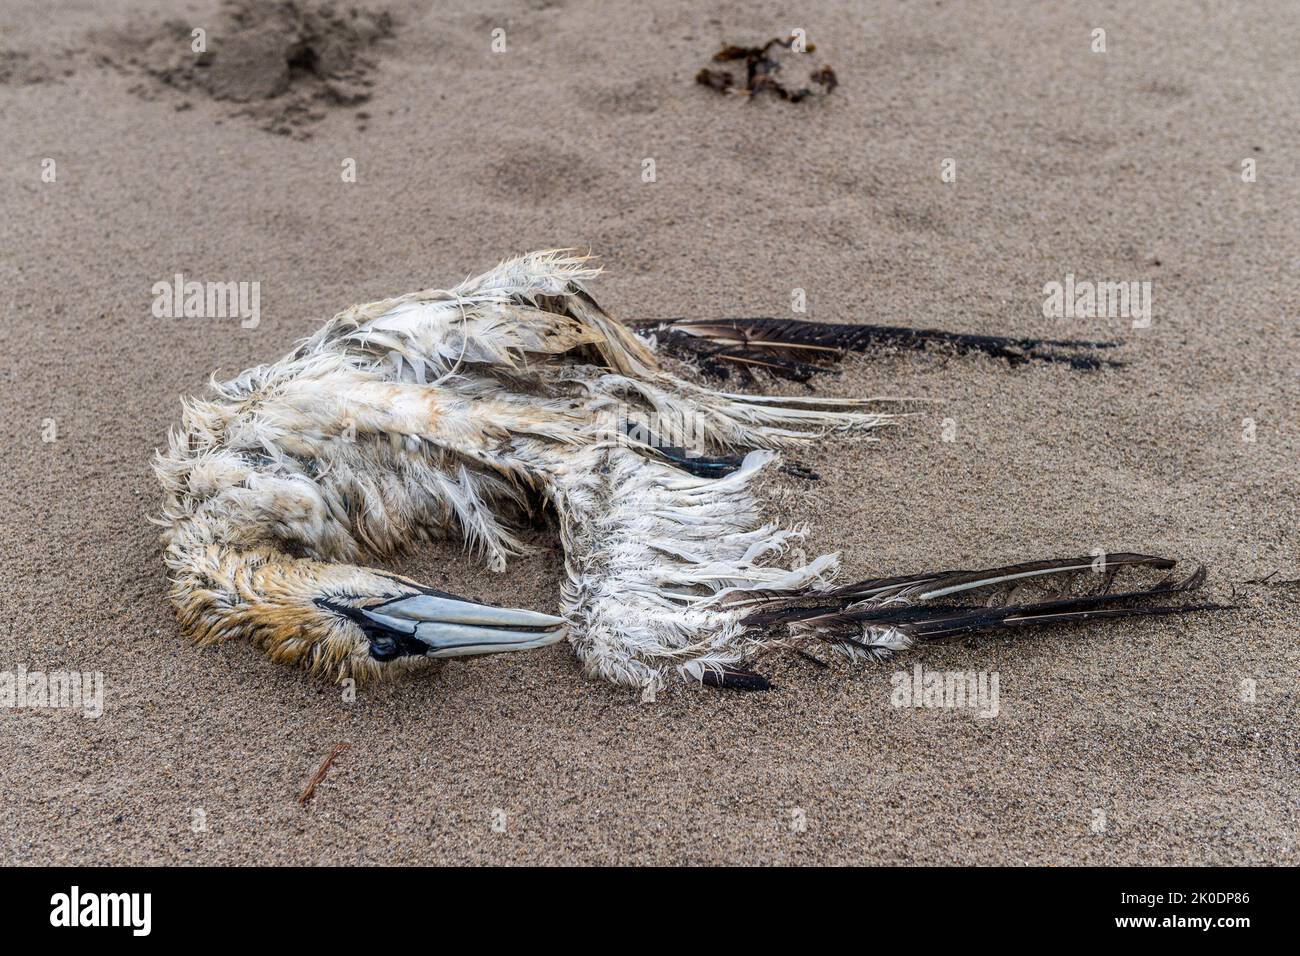 Warren Beach, Rosscarbery, West Cork, Irland. Zwei tote Vögel wurden heute am Warren Beach in West Cork entdeckt, inmitten der aktuellen Angst vor der Vogelgrippe. Quelle: AG News/Alamy Live News Stockfoto